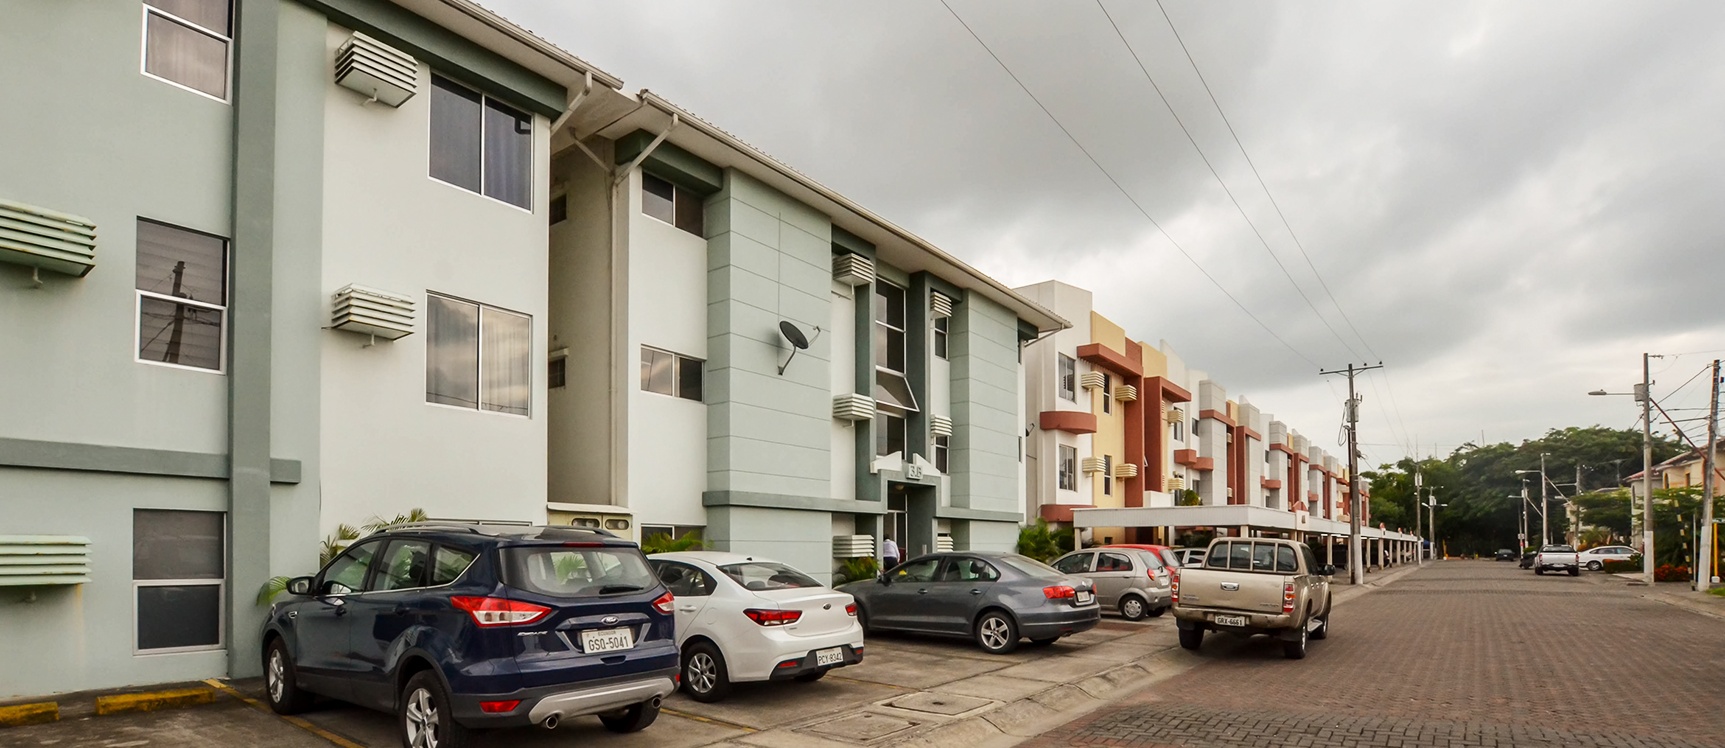 GeoBienes - Departamento en alquiler en Urbanización Volare sector Samborondón - Plusvalia Guayaquil Casas de venta y alquiler Inmobiliaria Ecuador